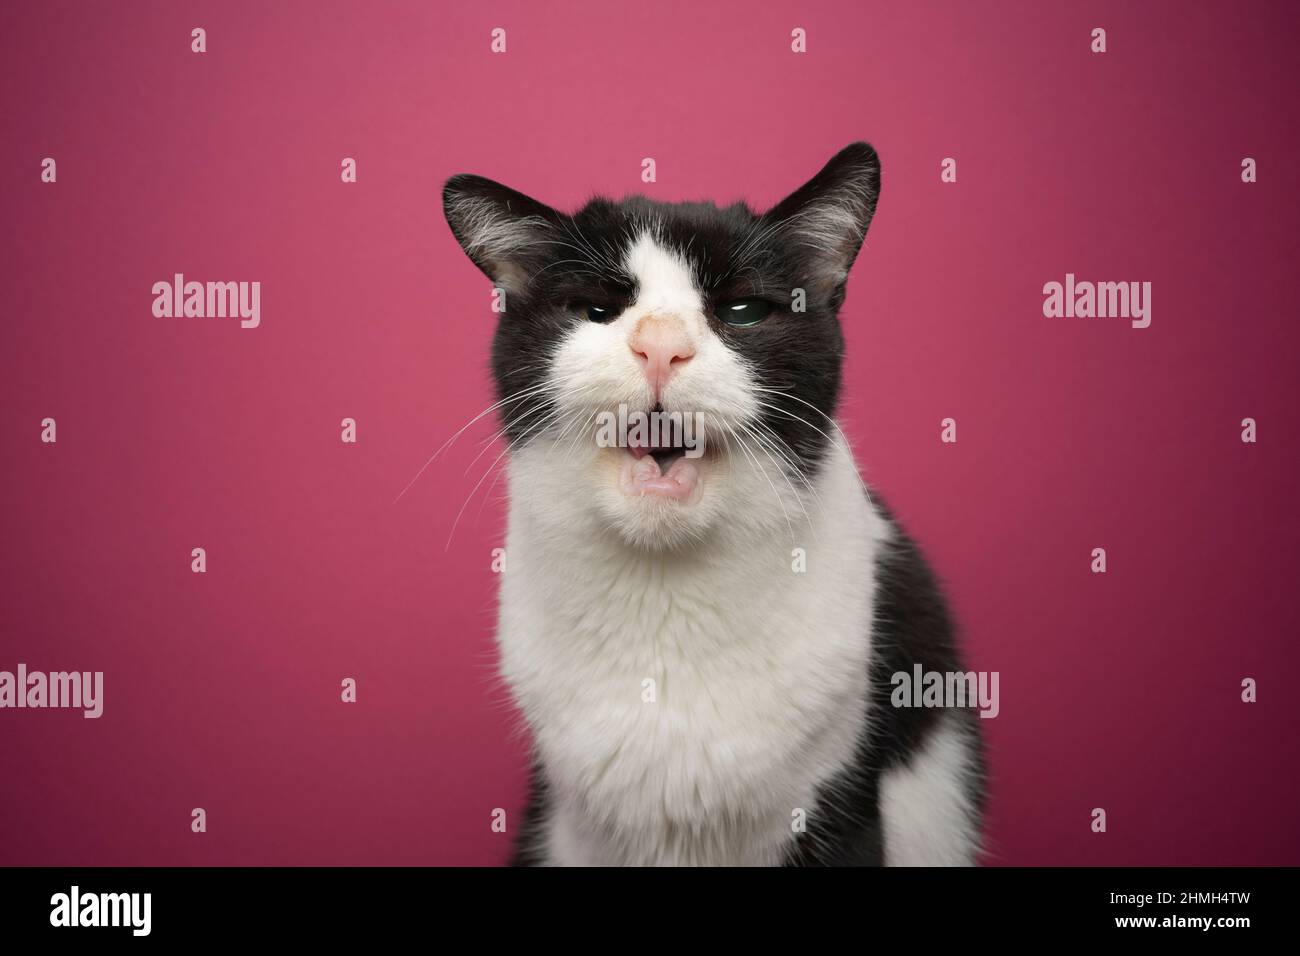 gatto in bianco e nero salvato senza denti e cieco in un occhio con bocca aperta guardando la fotocamera ritratto su sfondo rosa Foto Stock